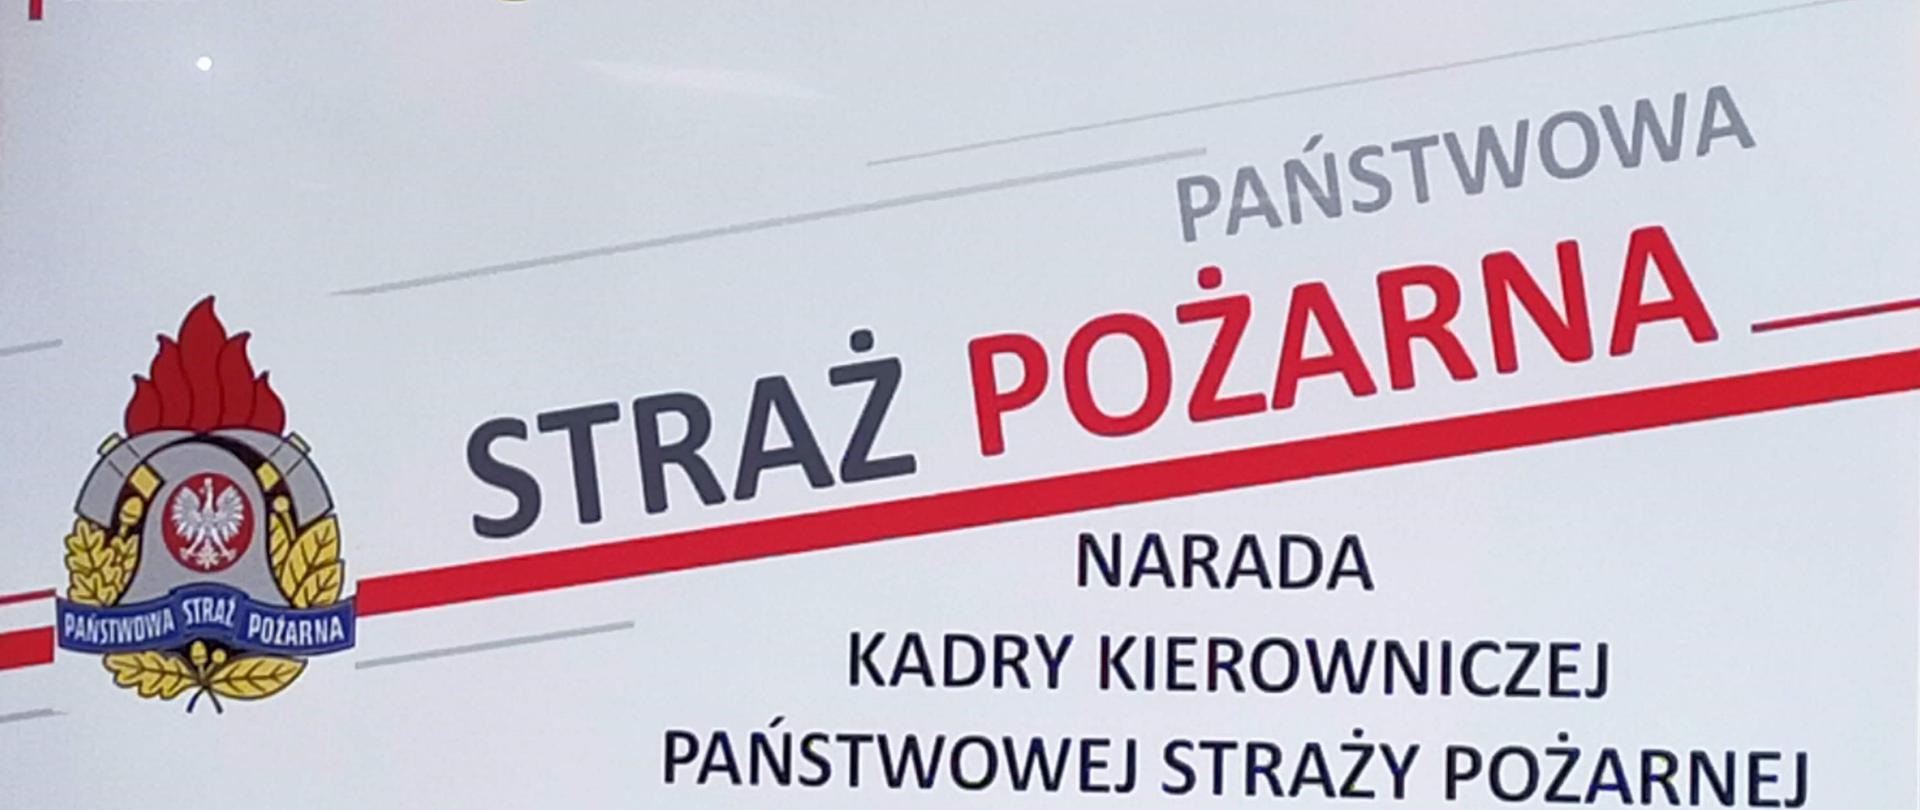 Logo Państwowej Straży Pożarnej - narada kadry kierowniczej województwa pomorskiego.